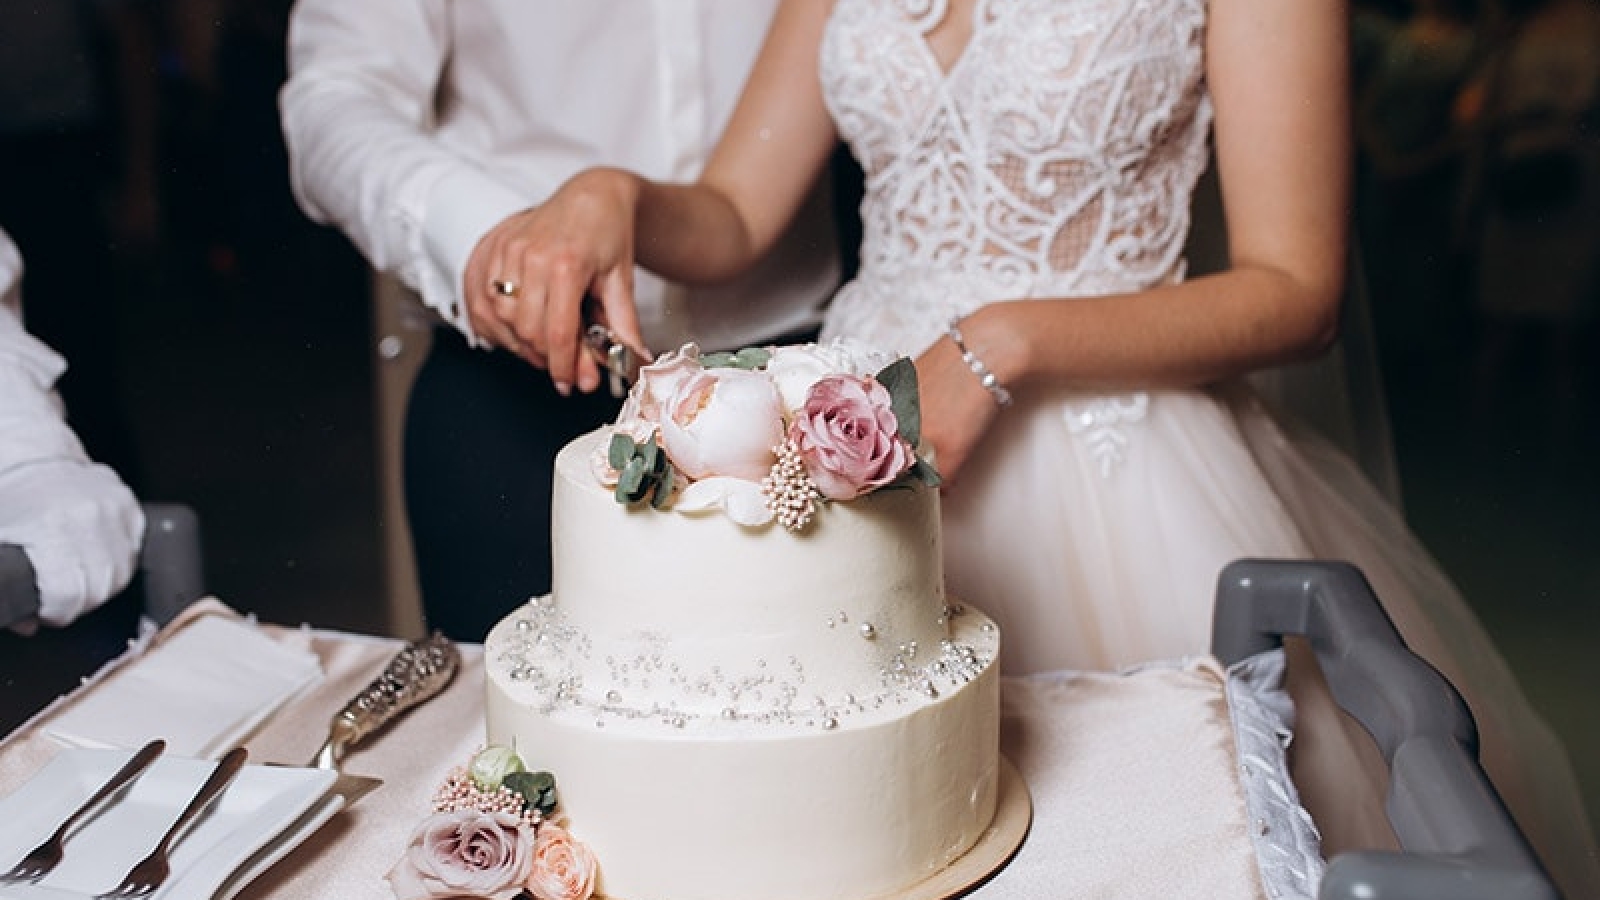 Come scegliere la torta nunziale